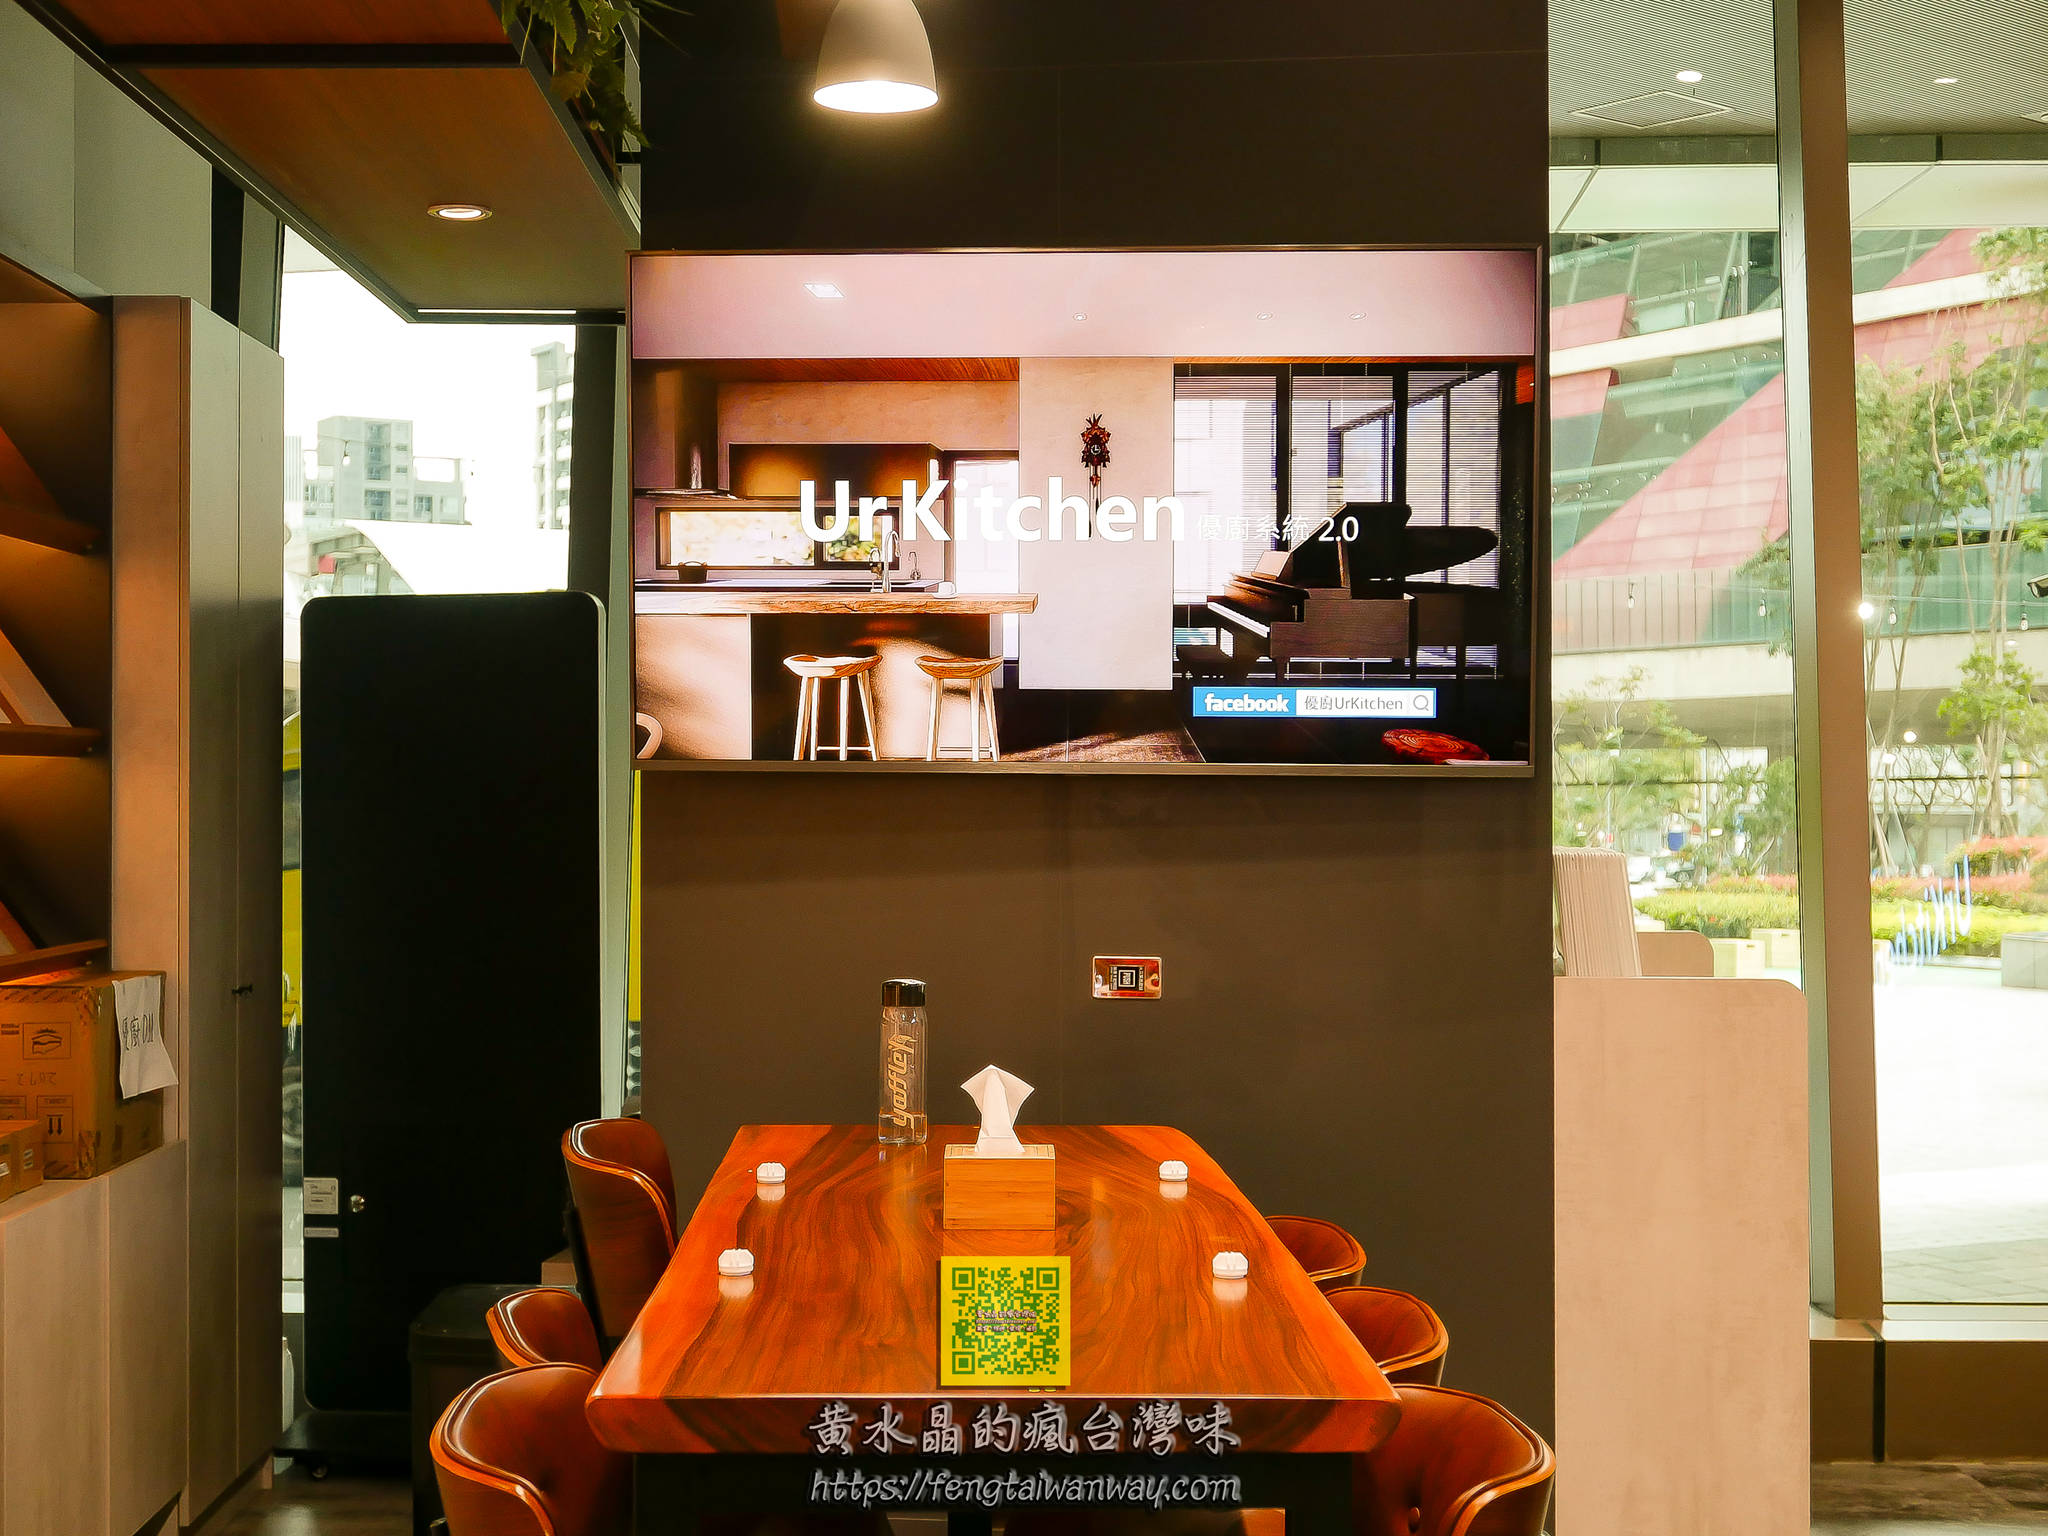 鰻魚大盛【桃園美食】|青埔Global Mall環球購物中心A19鰻魚飯專賣店